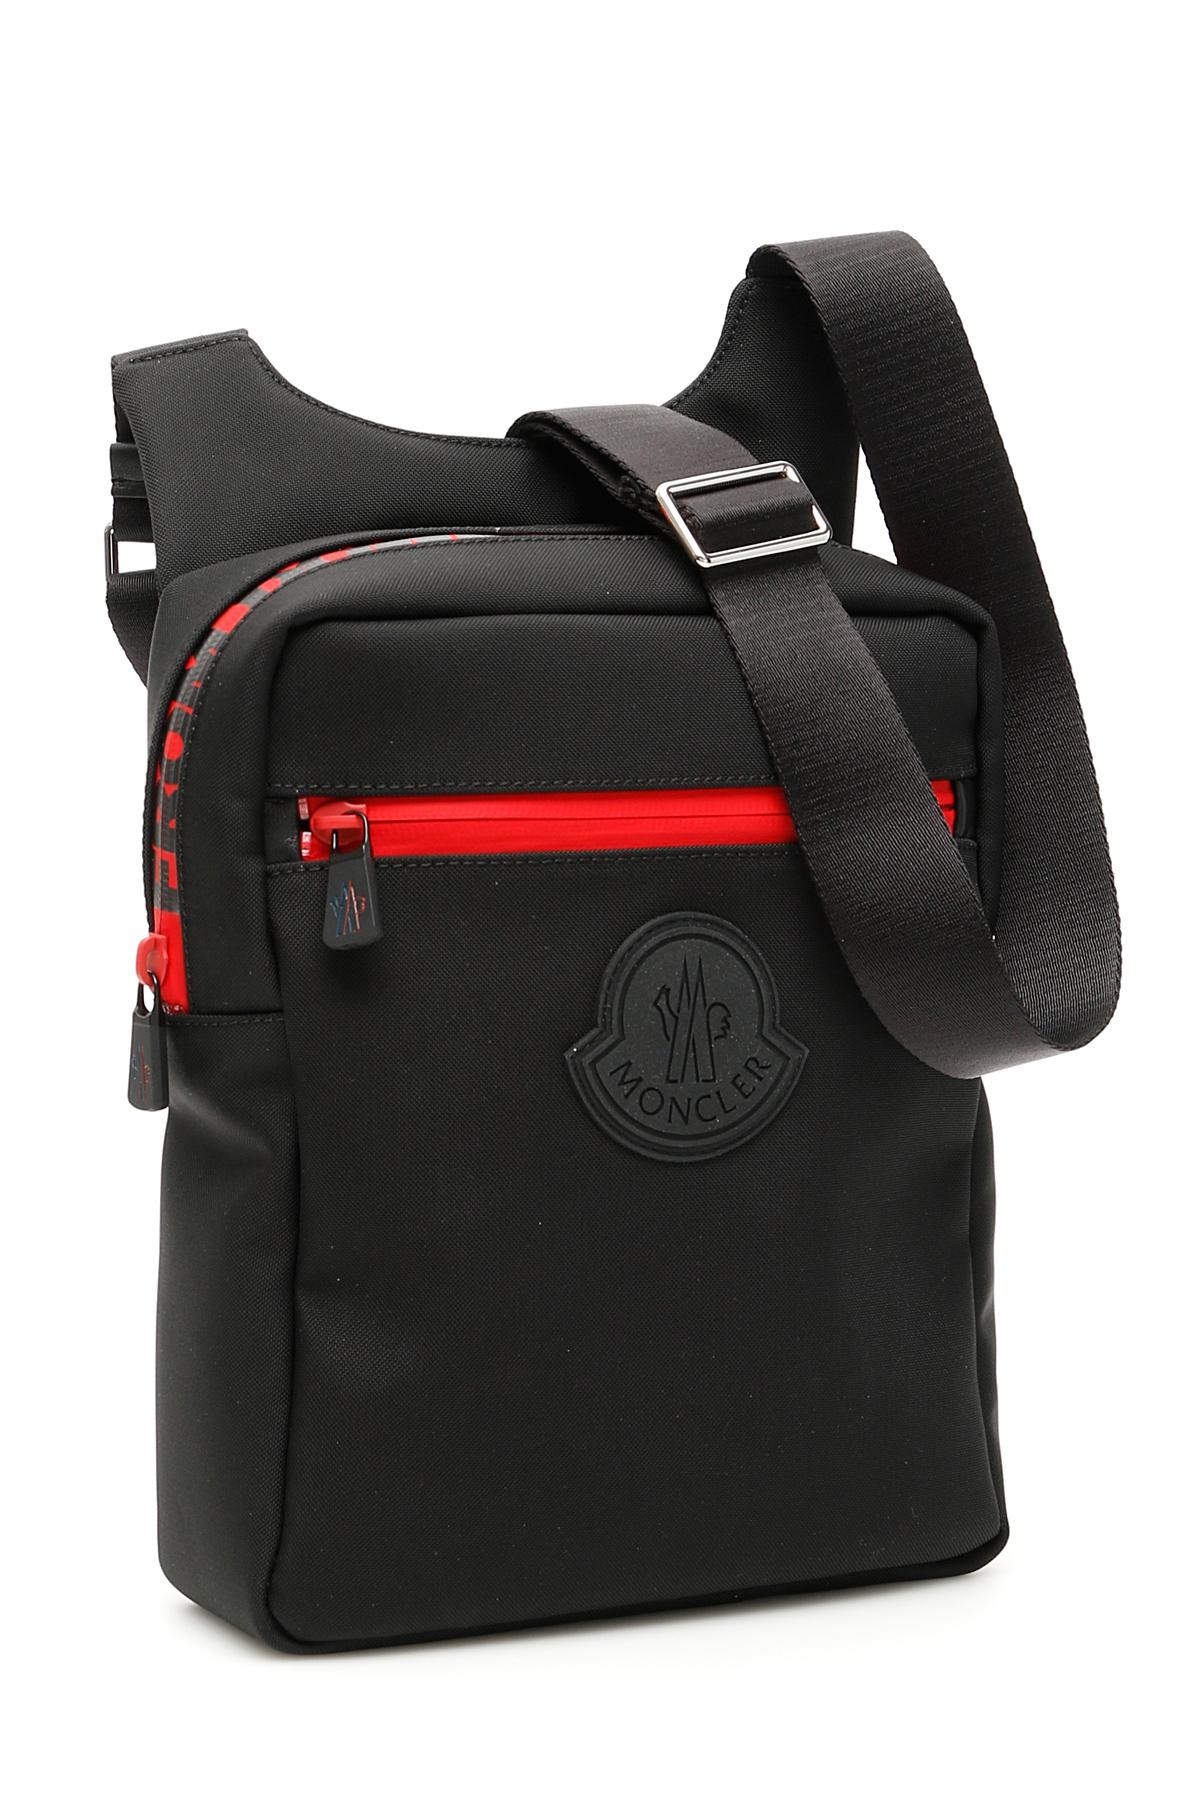 Moncler Pierrick Backpack | Bags & Cases | Harry Rosen